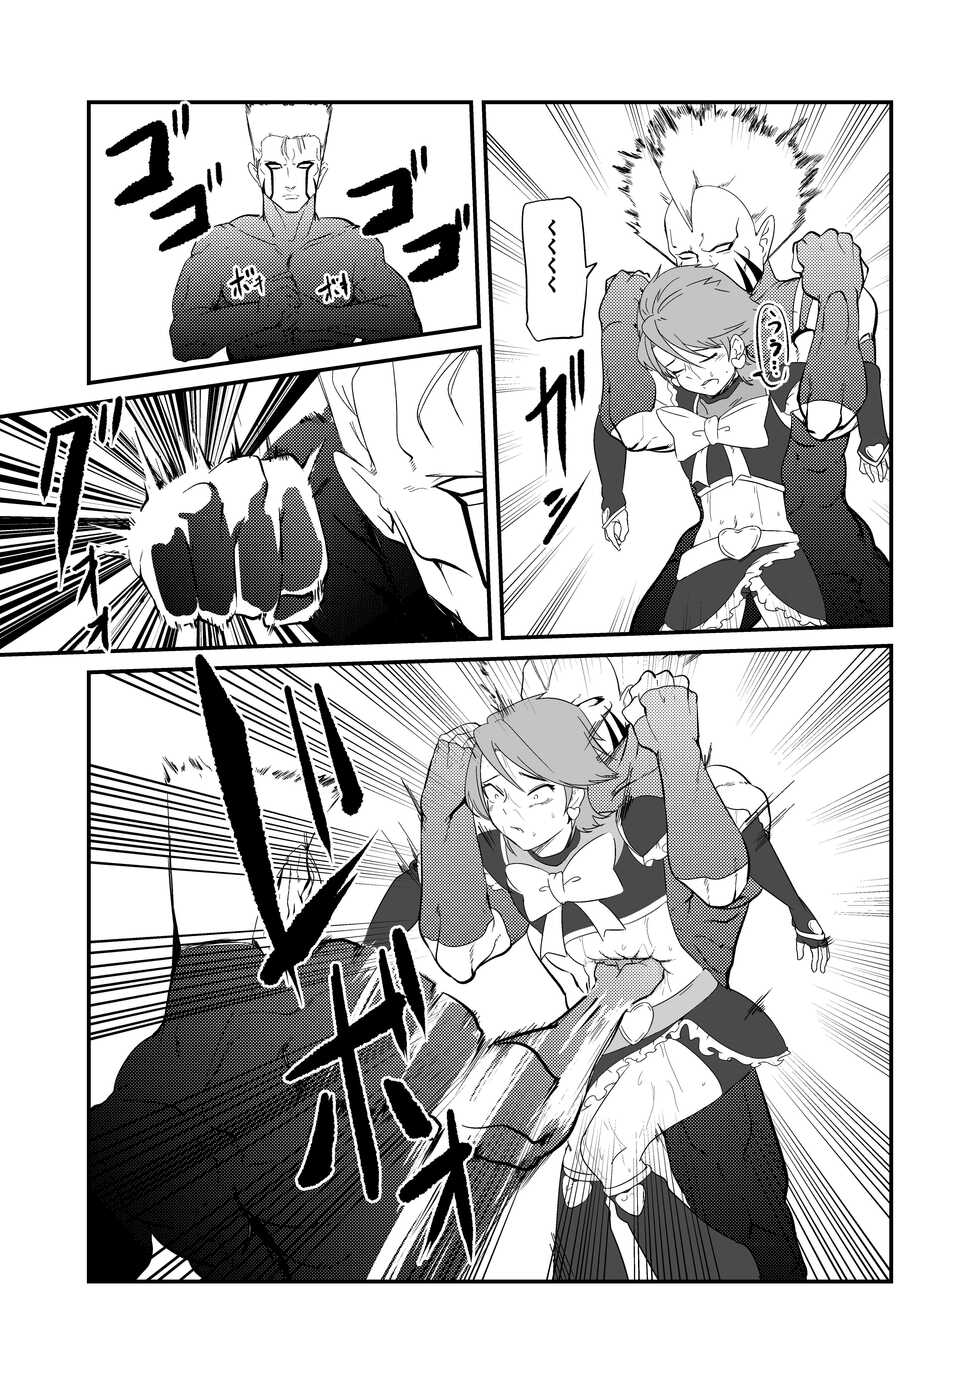 [JabyssK] Belly Crisis 7 (Futari wa Pretty Cure) - Page 26